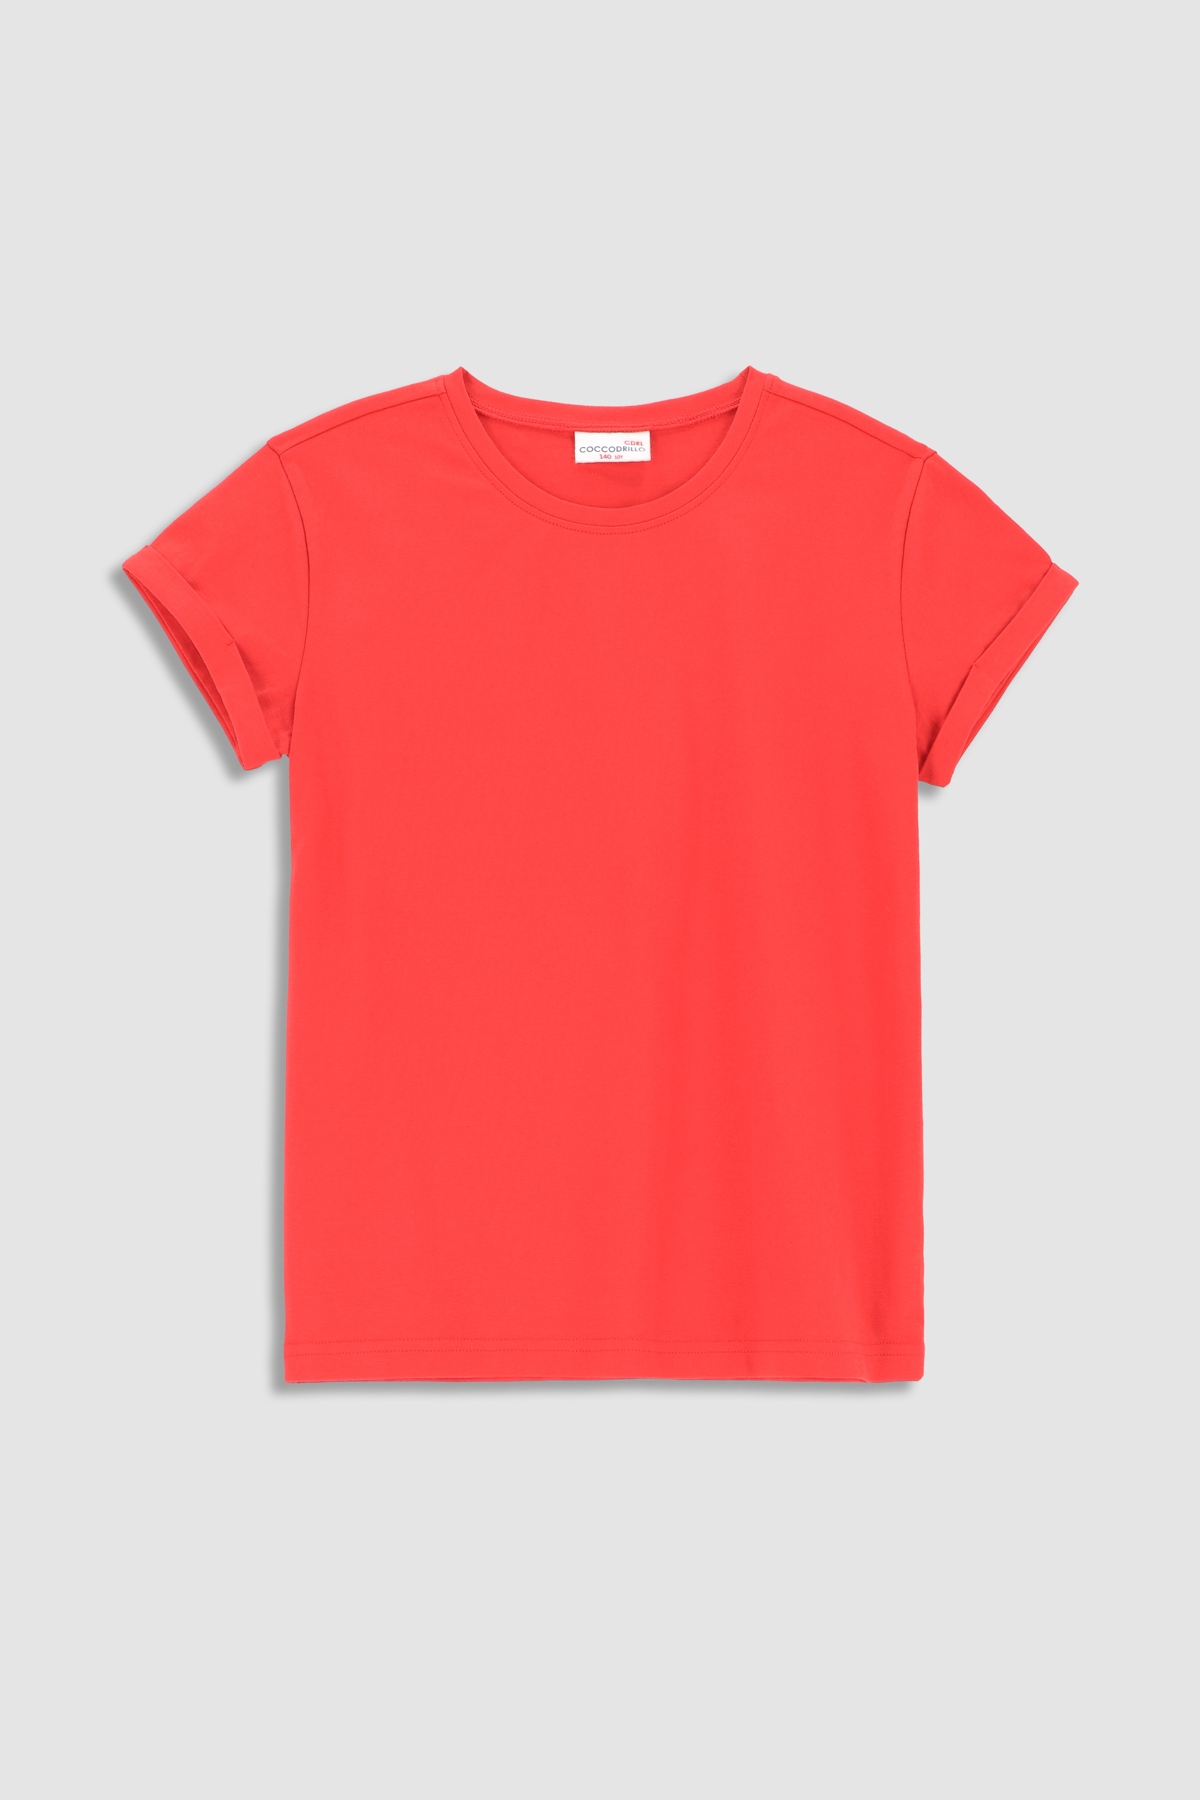 Dziewczęca bluzka czerwona 98 Coccodrillo